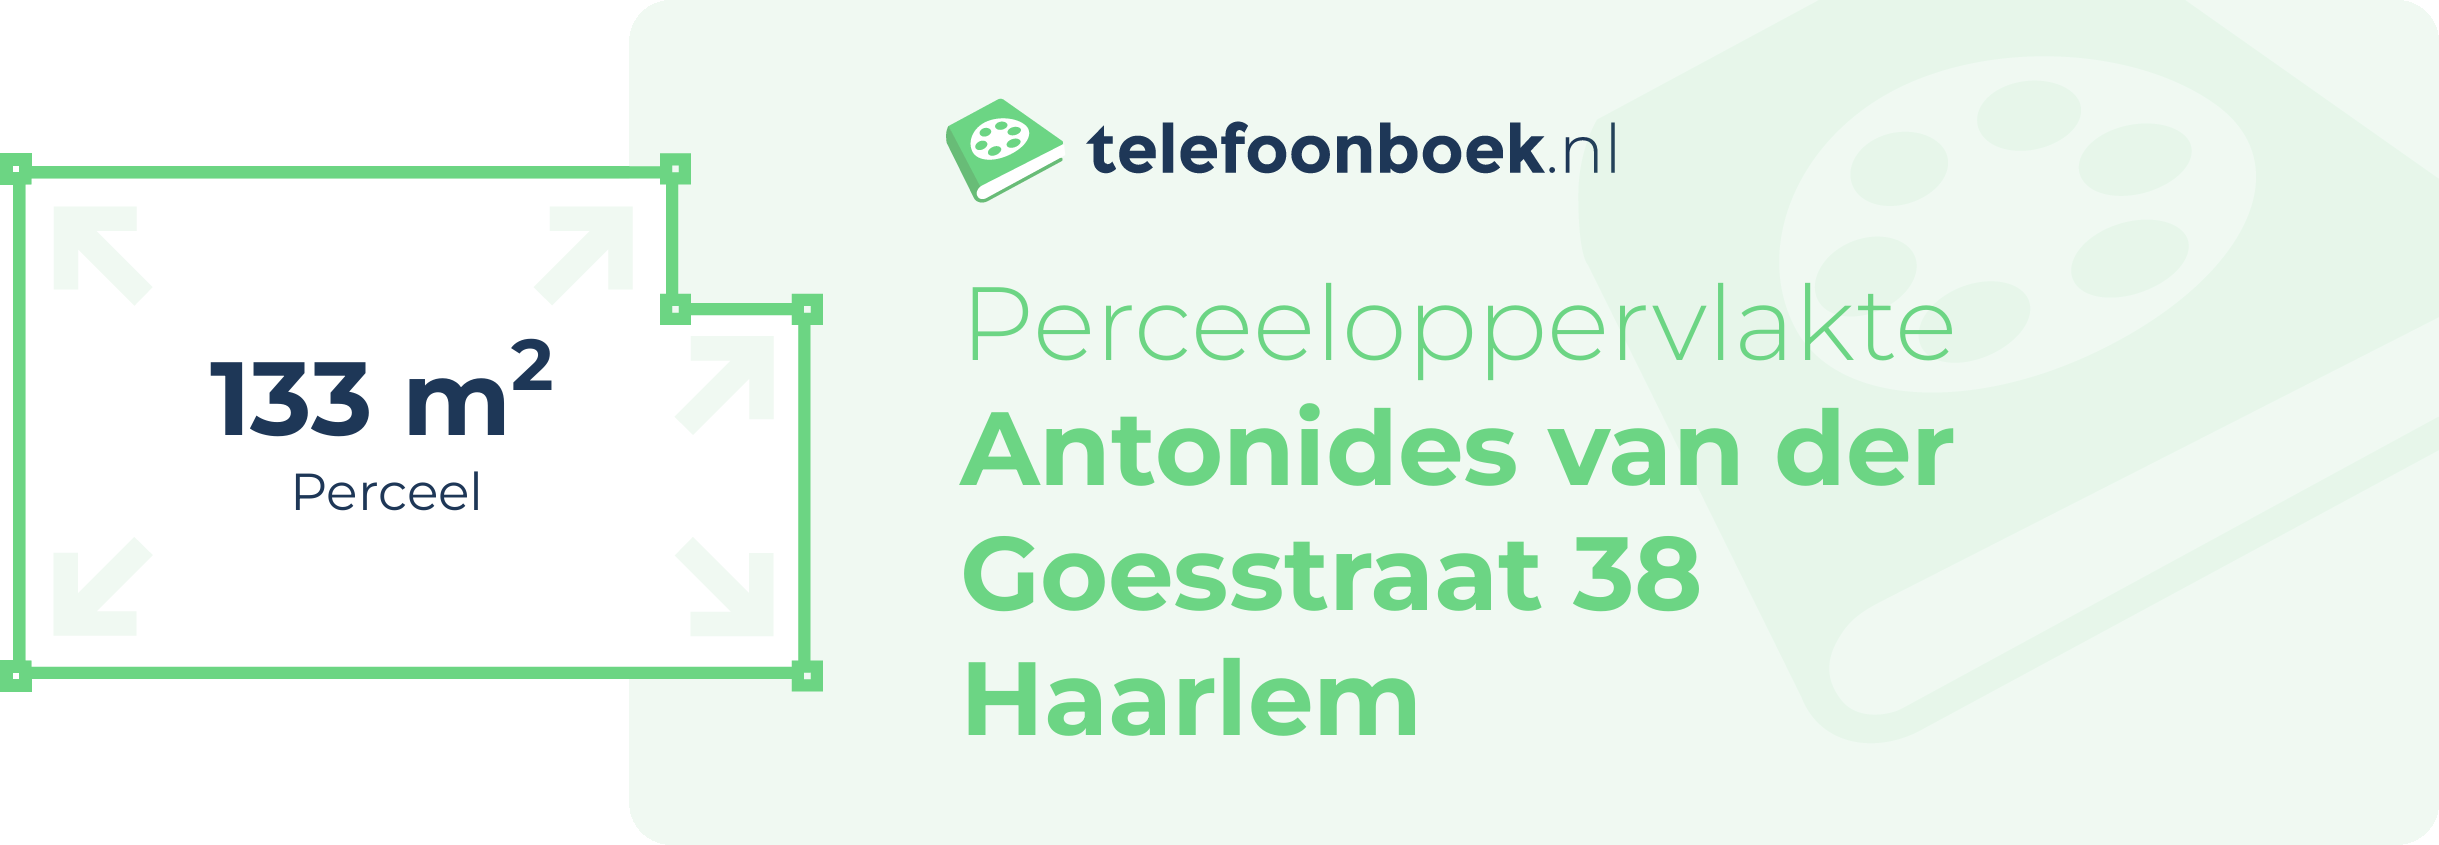 Perceeloppervlakte Antonides Van Der Goesstraat 38 Haarlem